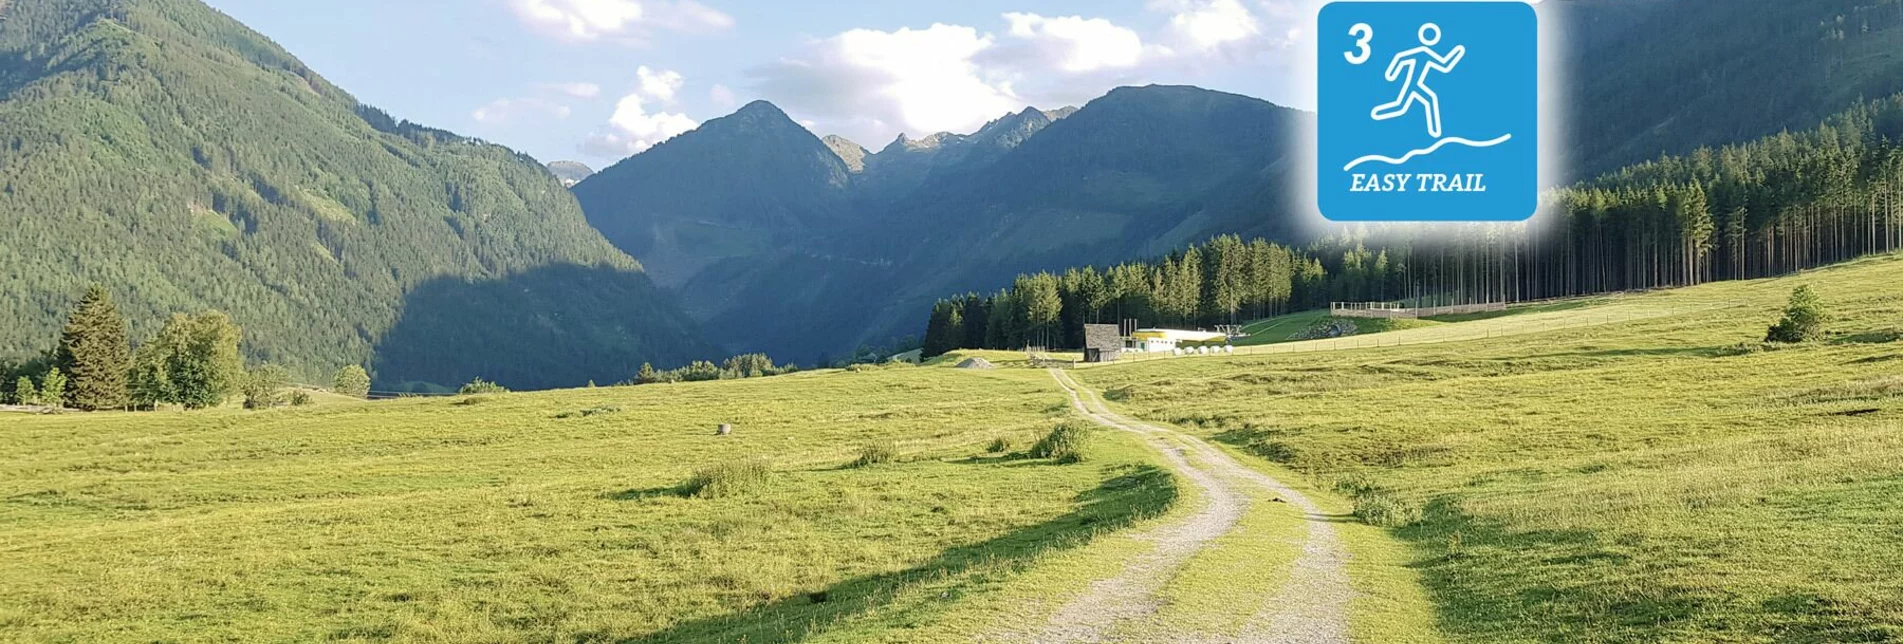 Trailrunning Bernhard Knauß Trail - Touren-Impression #1 | © Erlebnisregion Schladming-Dachstein